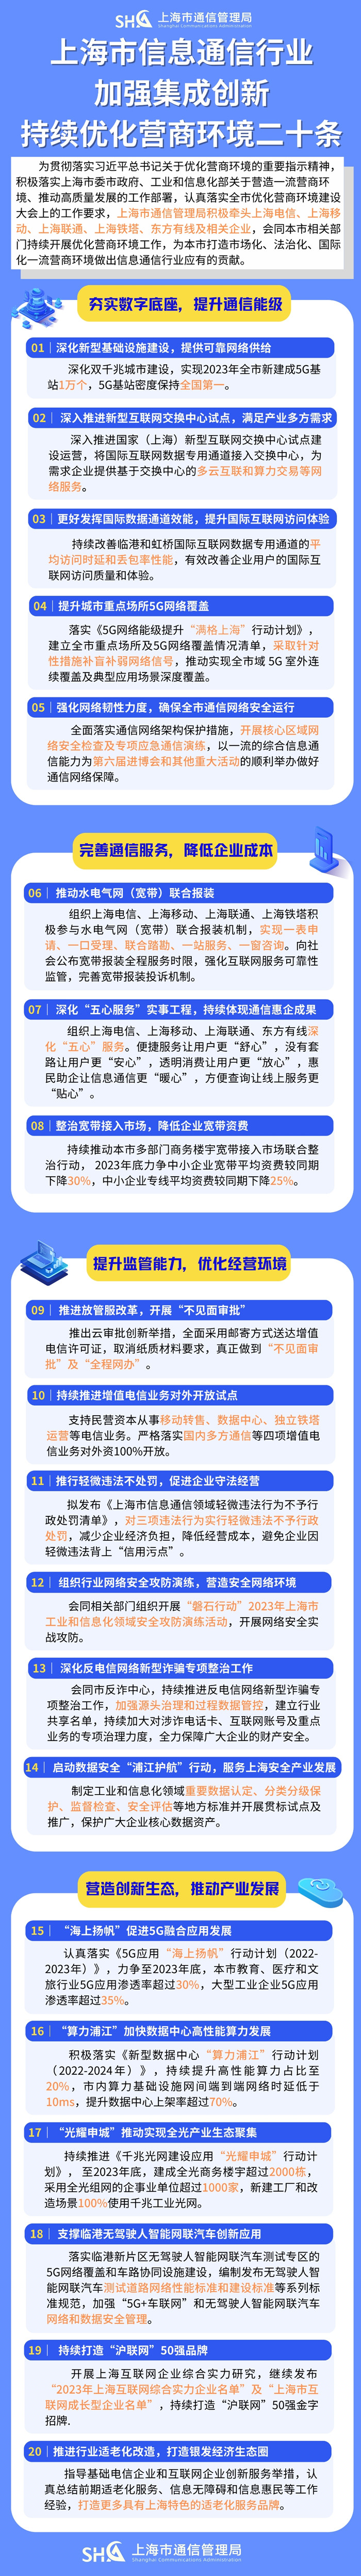 今年上海将新建5G基站1万个 5G基站密度保持全国第一